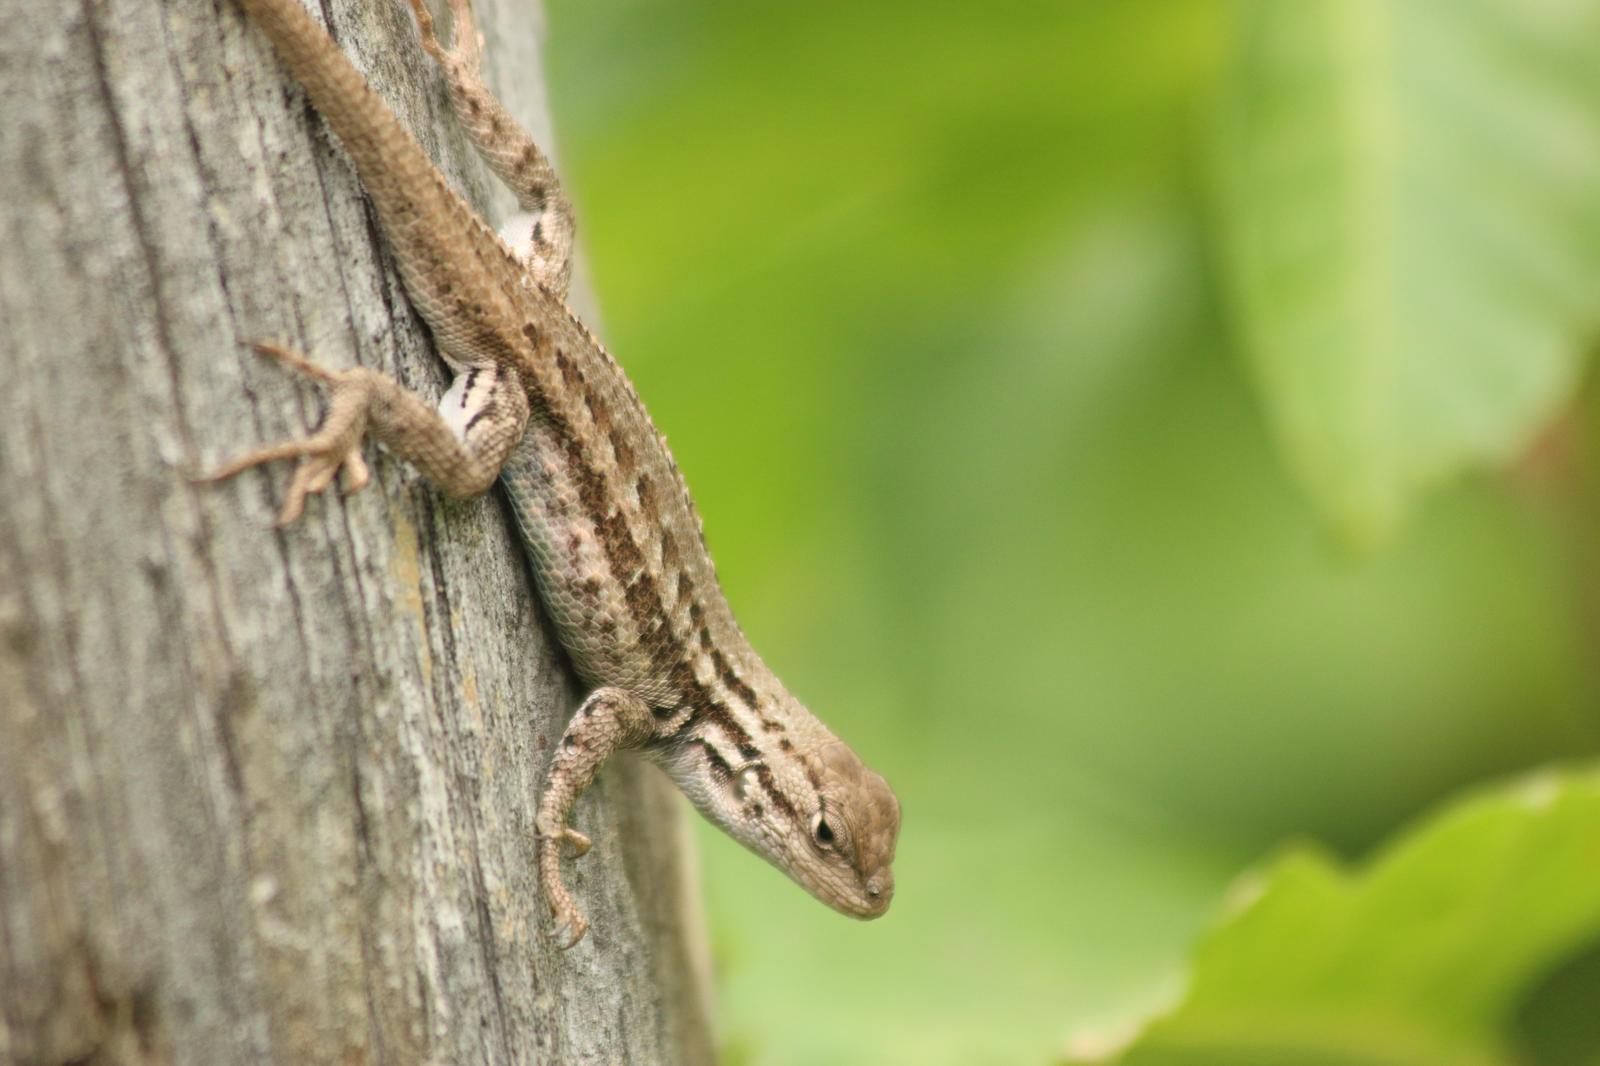 Sagebrush Lizard Photo by Peter Bergeson